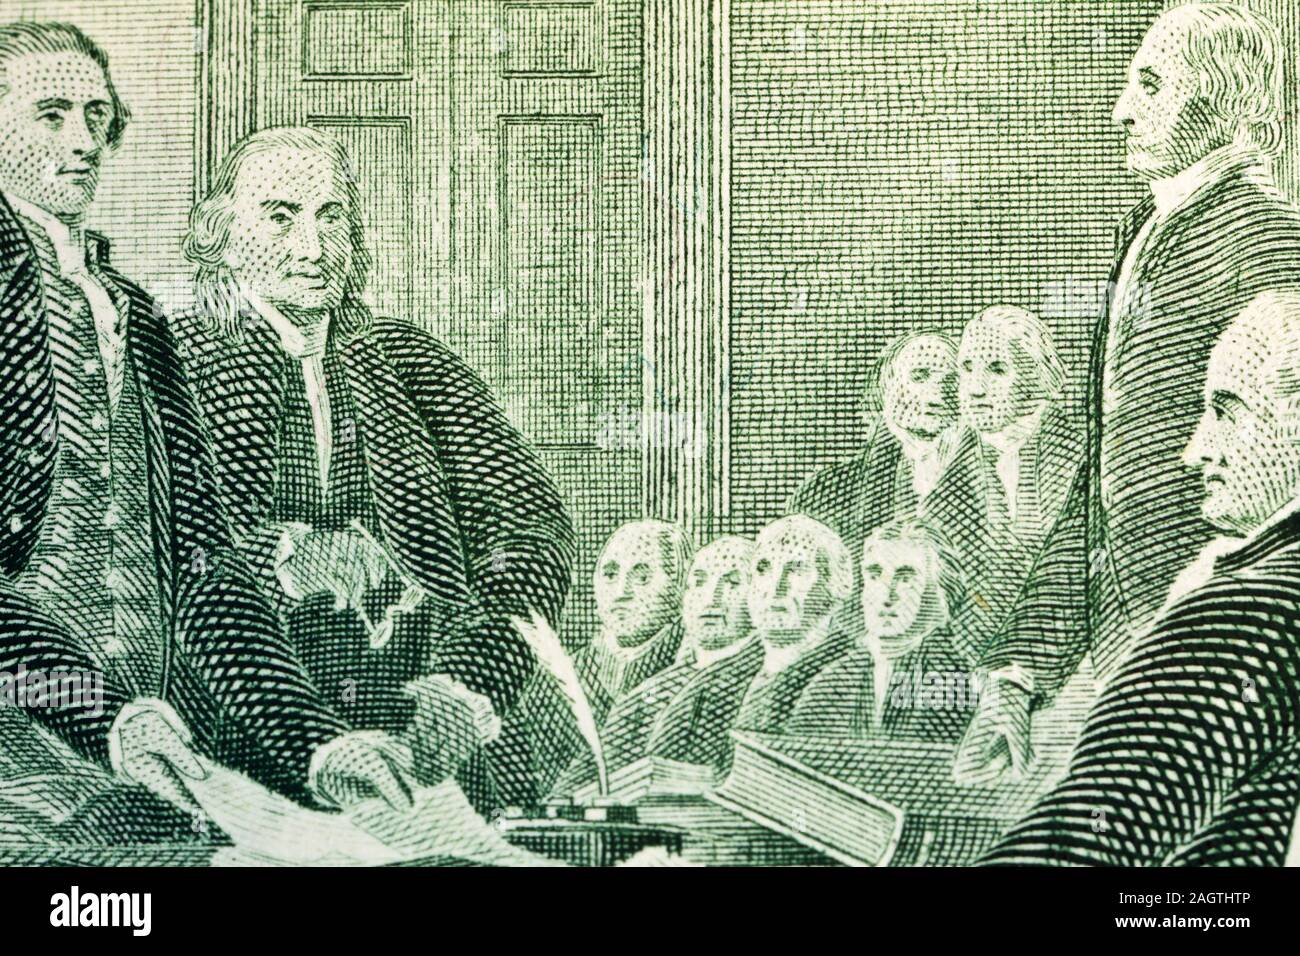 Makroaufnahme der Erklärung der Unabhängigkeit von den Vereinigten Staaten 2-Dollarscheine Stockfoto